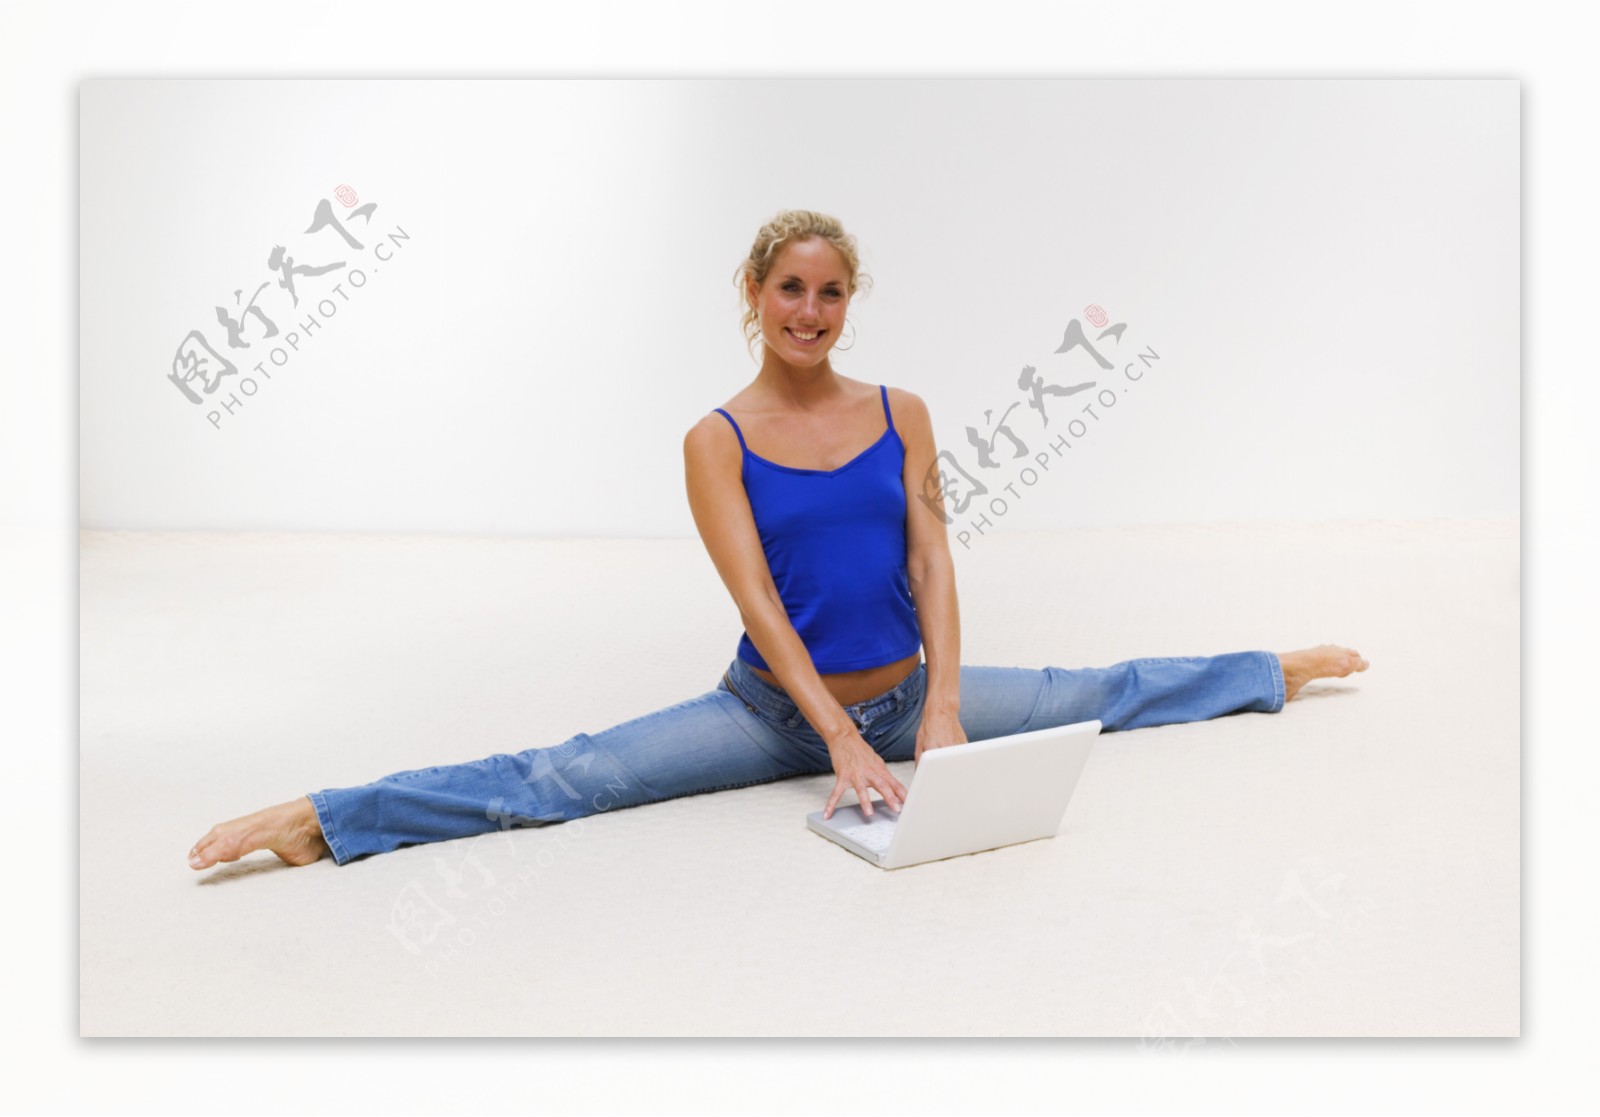 女孩锻炼身体，坐在劈腿上 库存图片. 图片 包括有 健康, 理想, 运动, 活动家, 执行, 微笑, 女孩 - 238138993